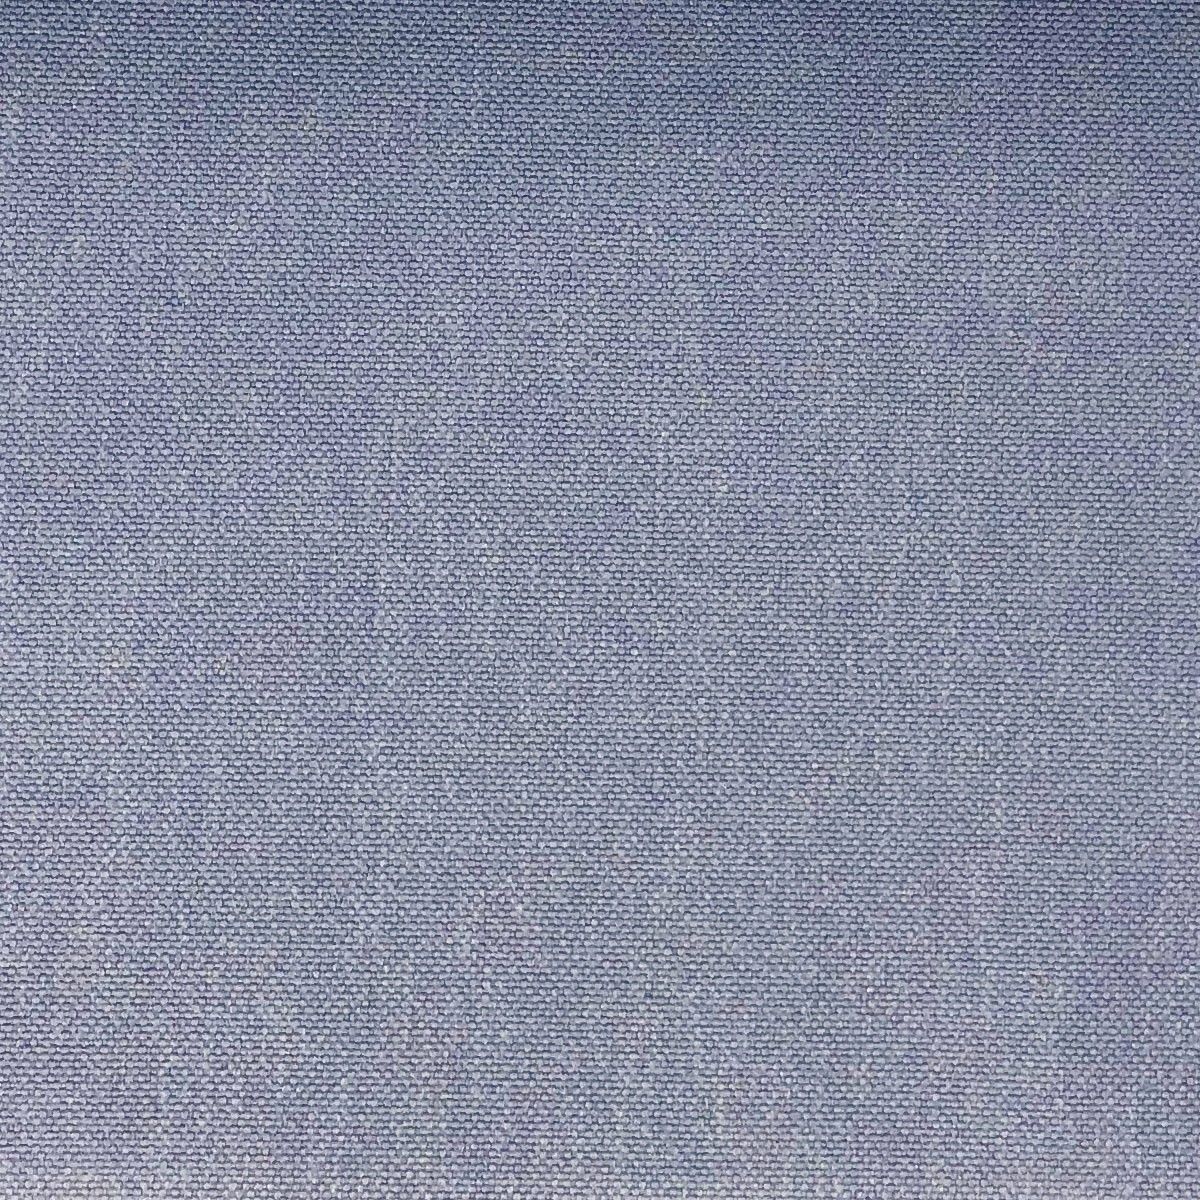 Glinara Bluebell Fabric by Chatham Glyn